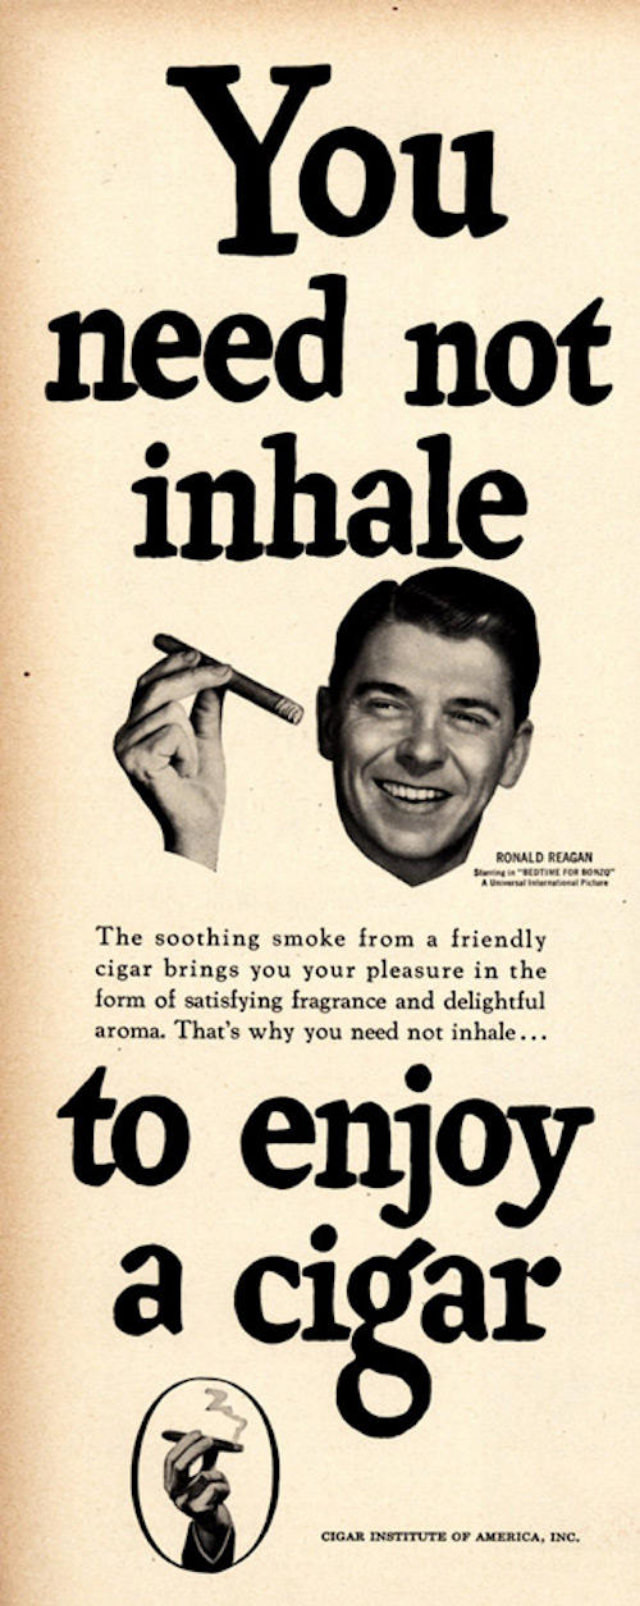 Cigar Institute of America Ad, 1951